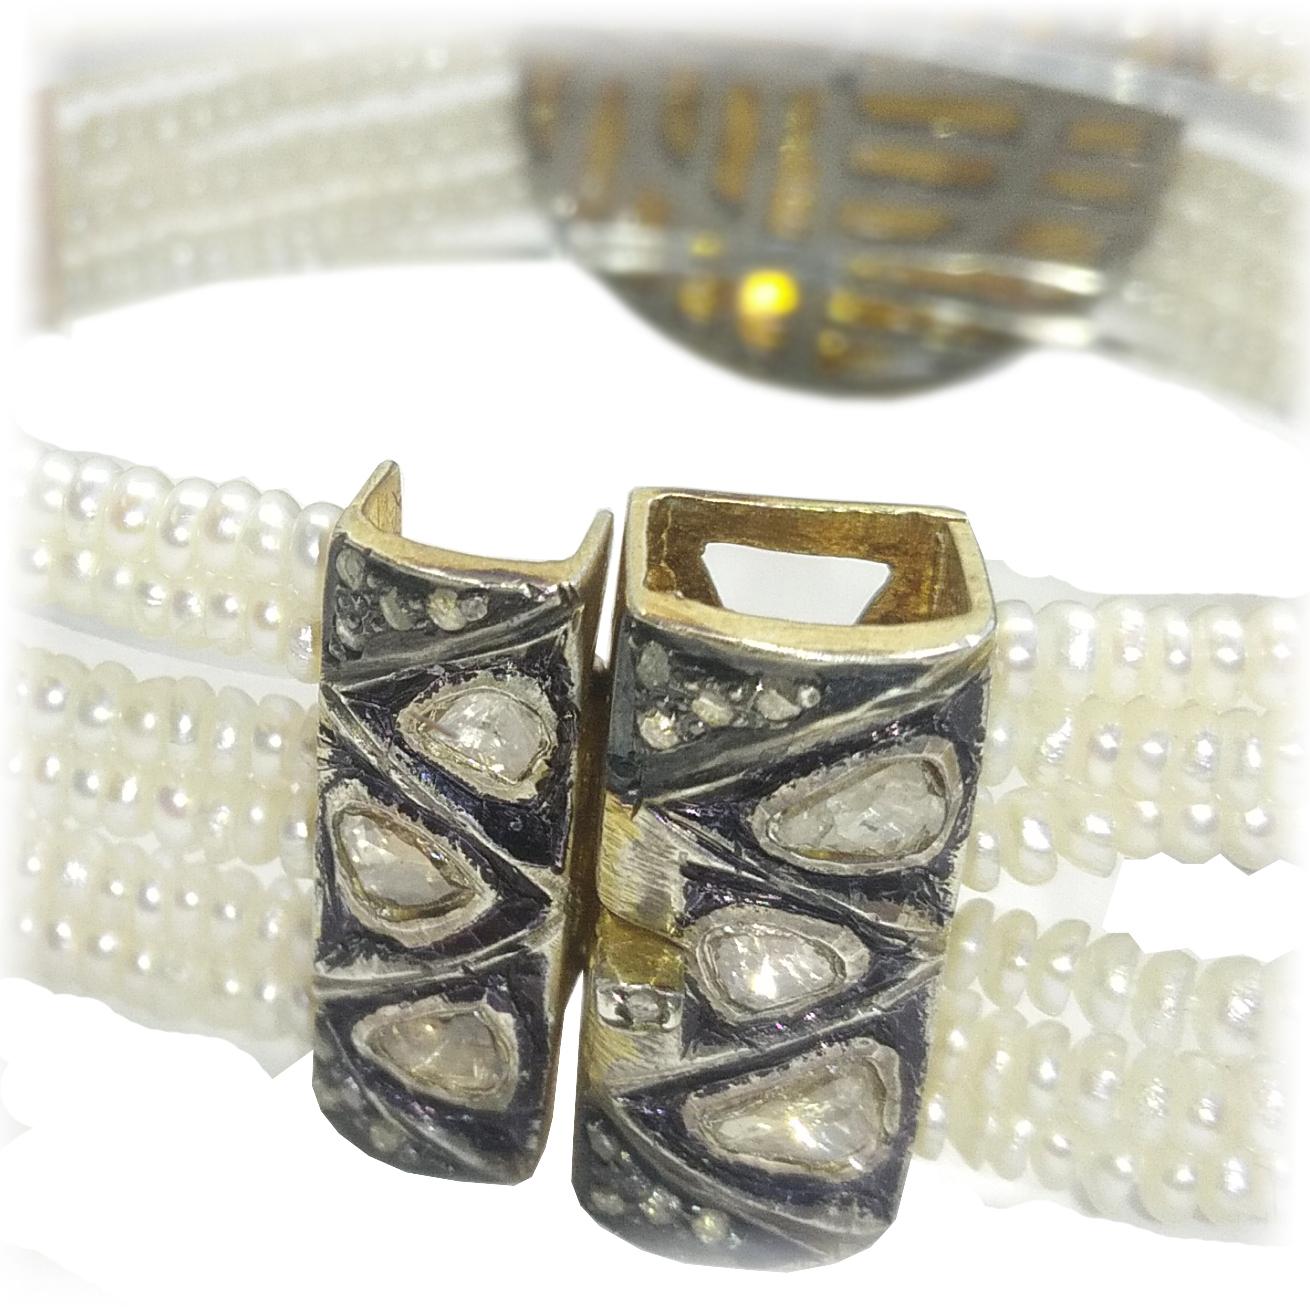 Diamond ‘Rose Cut’ and Freshwater Pearls Bracelet (Rosenschliff)